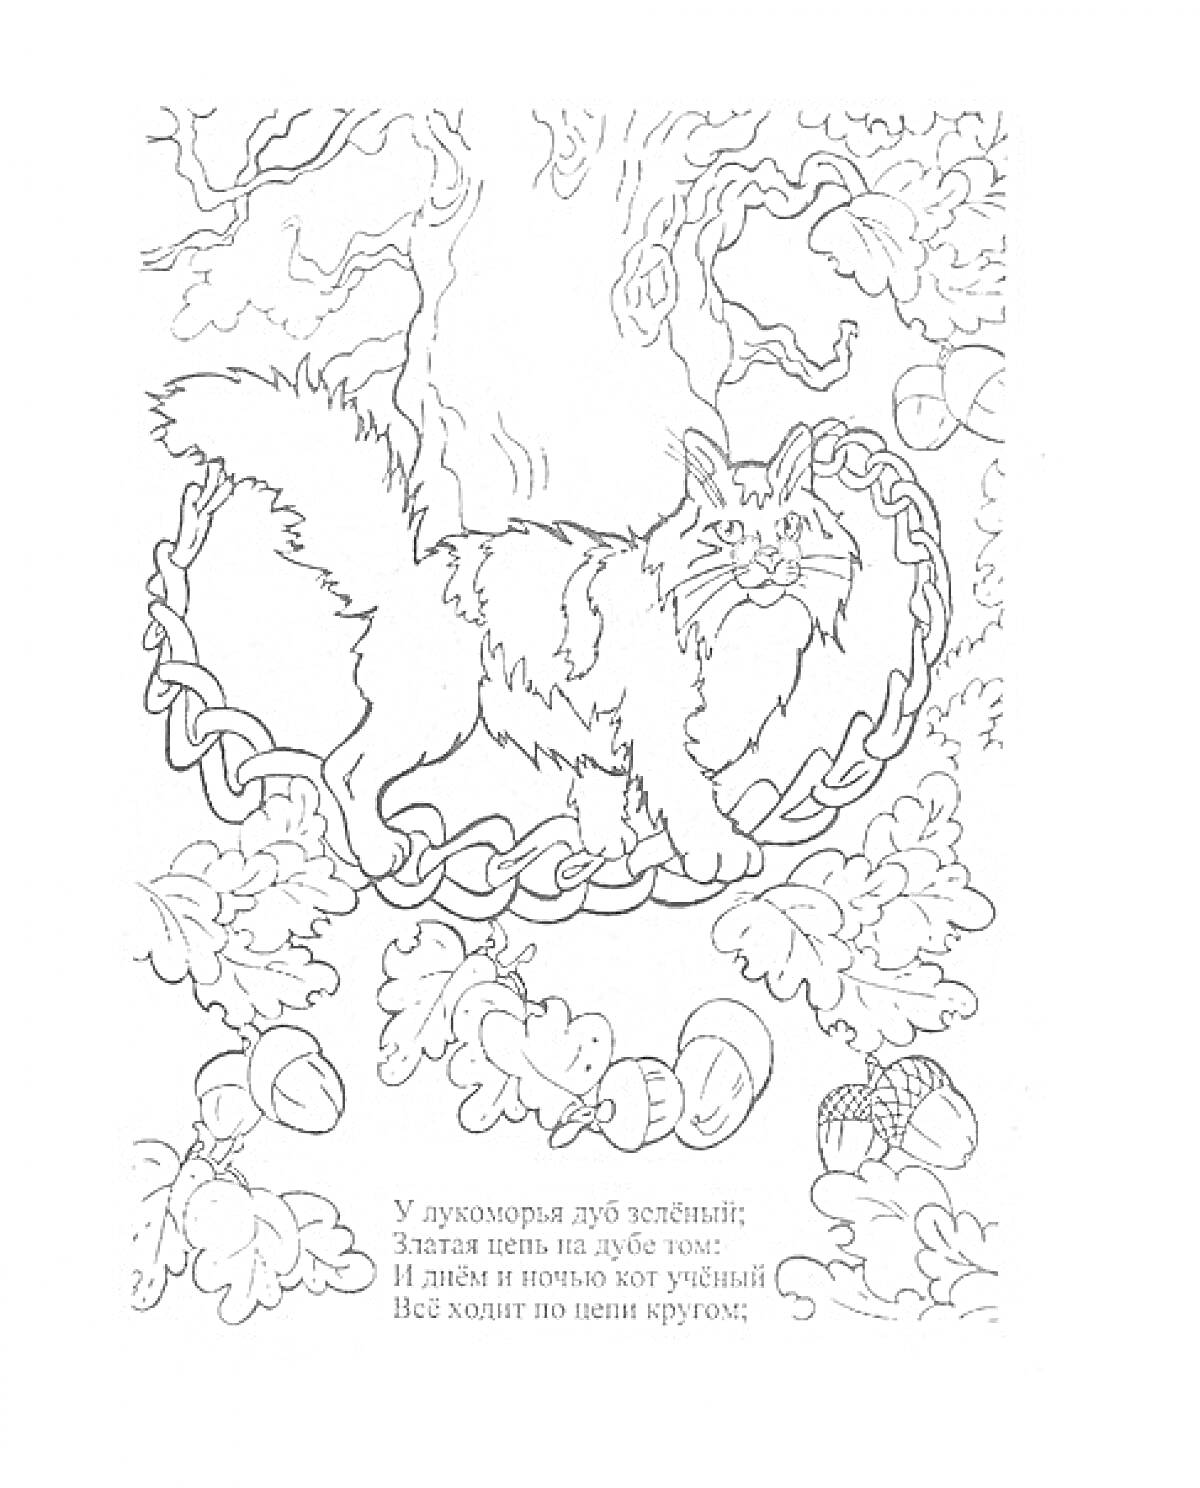 Кот на цепи у дуба, желуди и дубовые листья, текст на русском языке